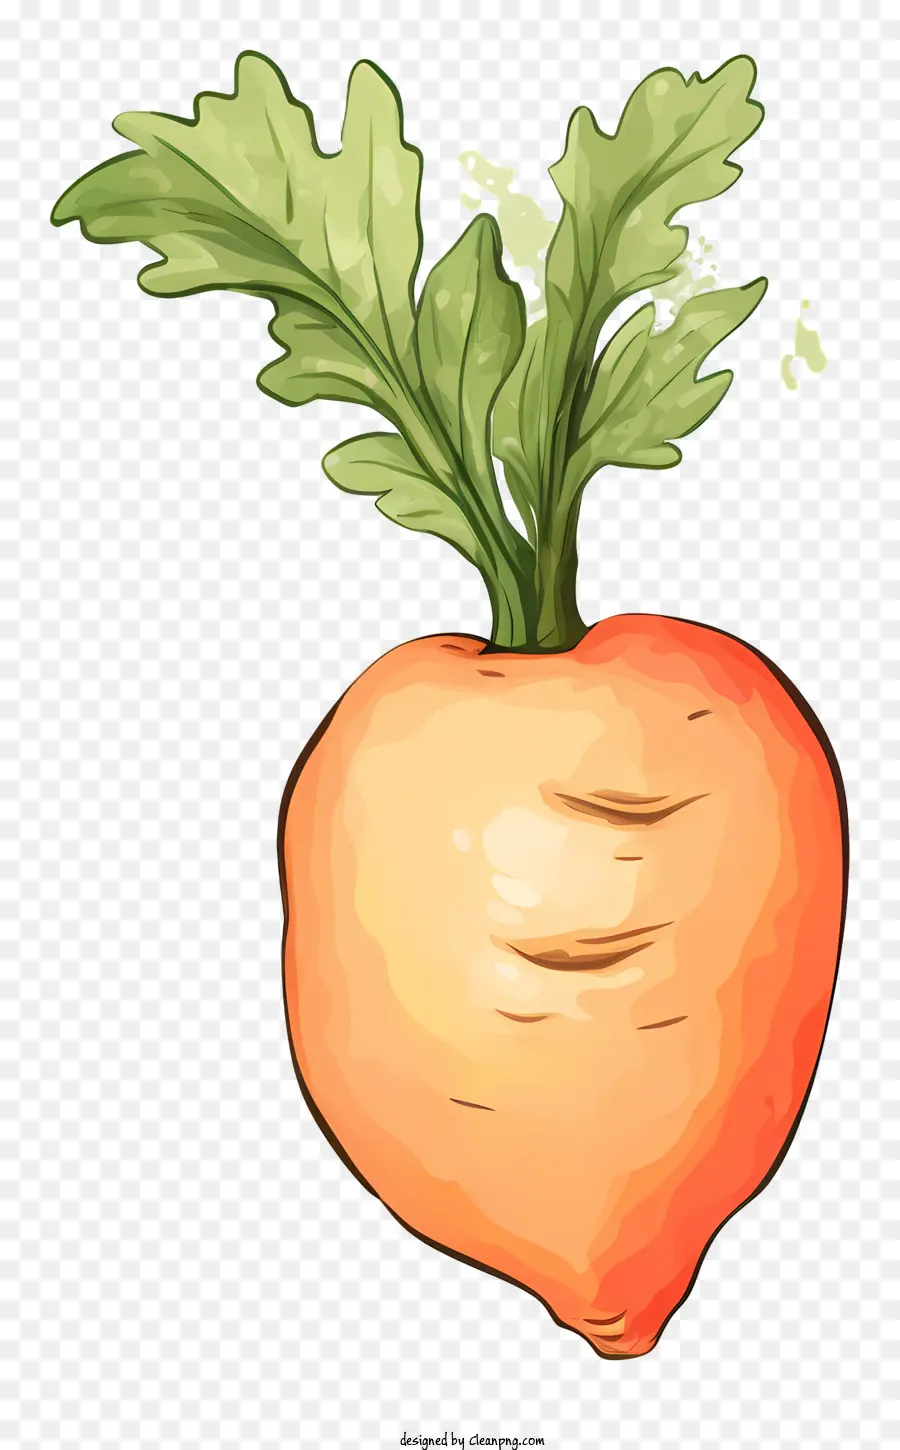 Nutrizione Nutrizione di carota Benefici di carota vitamina A alimenti ricchi di fibre scelte alimentari sani - Carota: vegetazione a radice, stelo bianco, radice arancione, cibo sano e gustoso